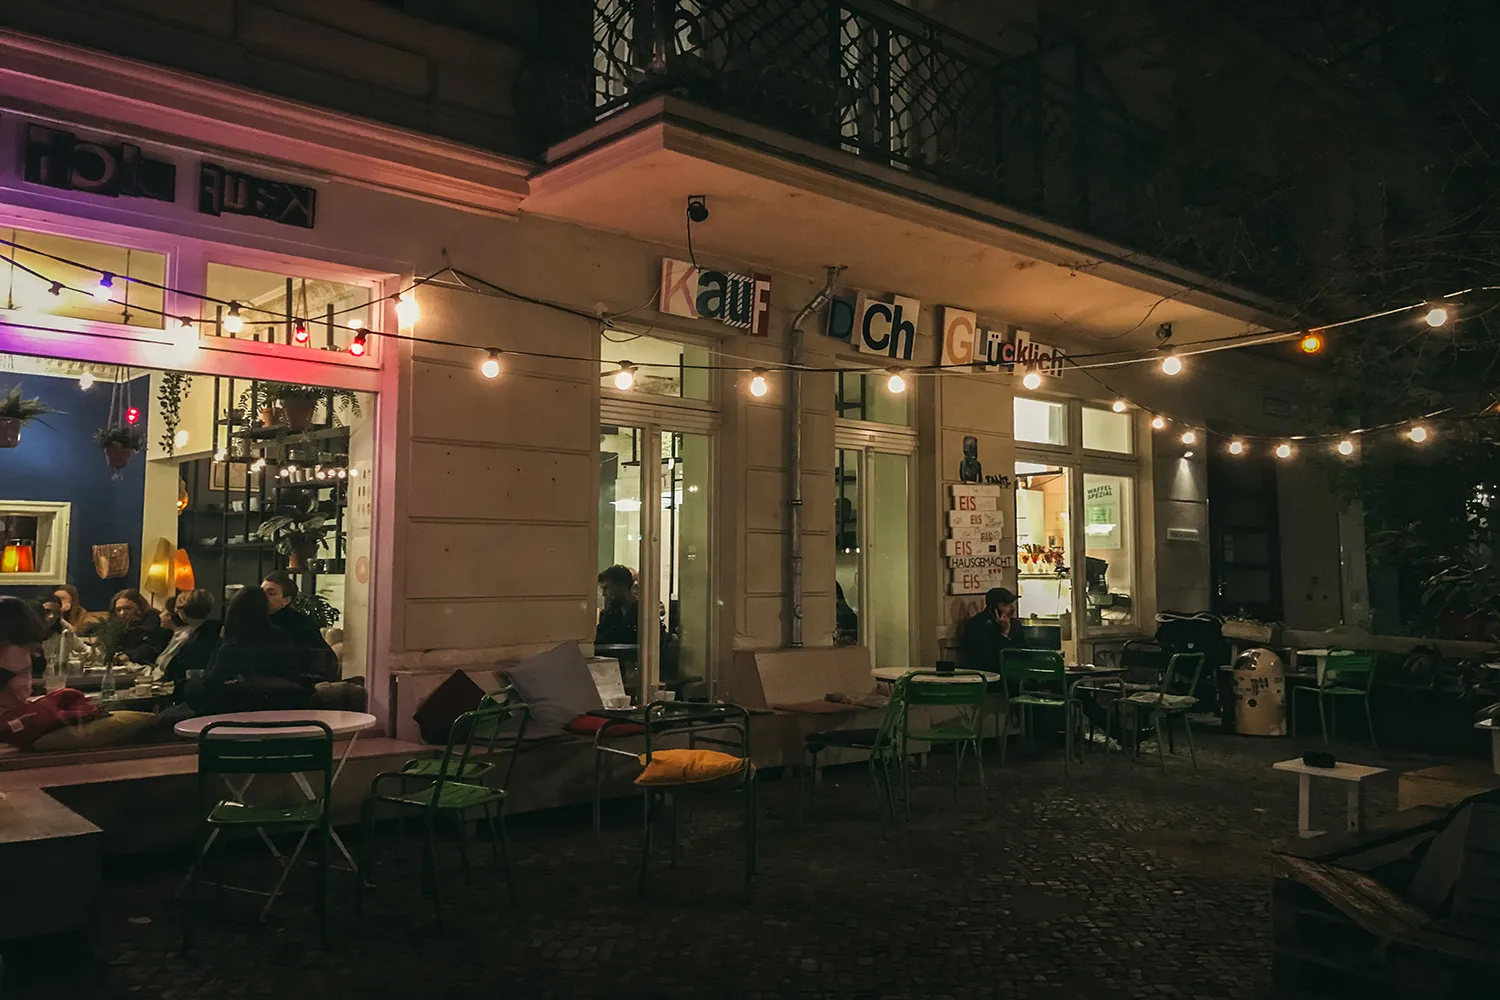 Café Berlin Kauf dich glucklich